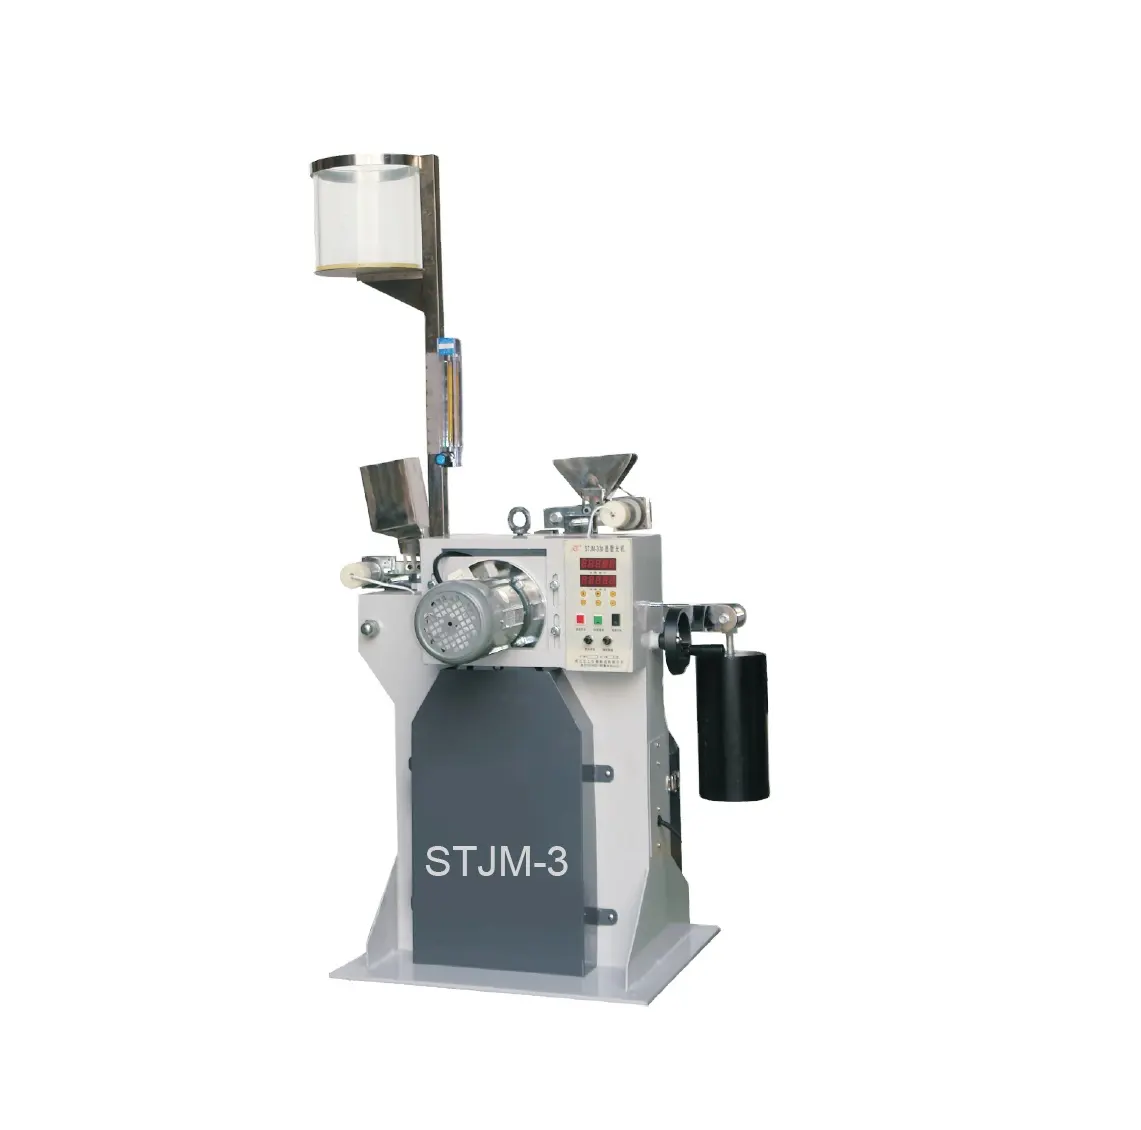 STJM-3 hızlanma değirmeni değirmeni makinesi kaldırım hızlandırılmış parlatma makinesi için değirmen taşı malzemeleri (PSV) sivil laboratuar